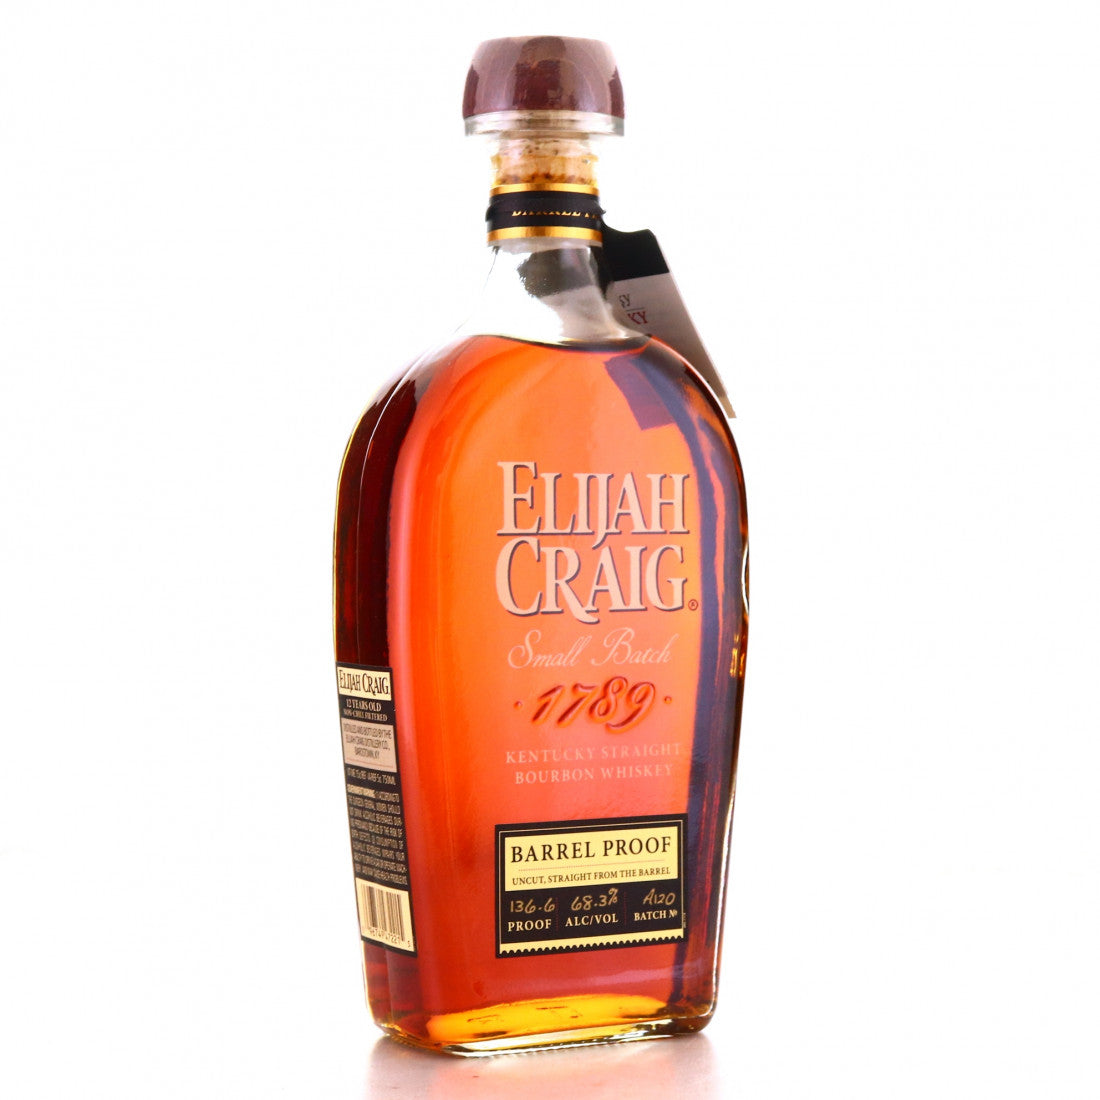 Elijah Craig Barrel Proof 12 Year Bourbon (A120)